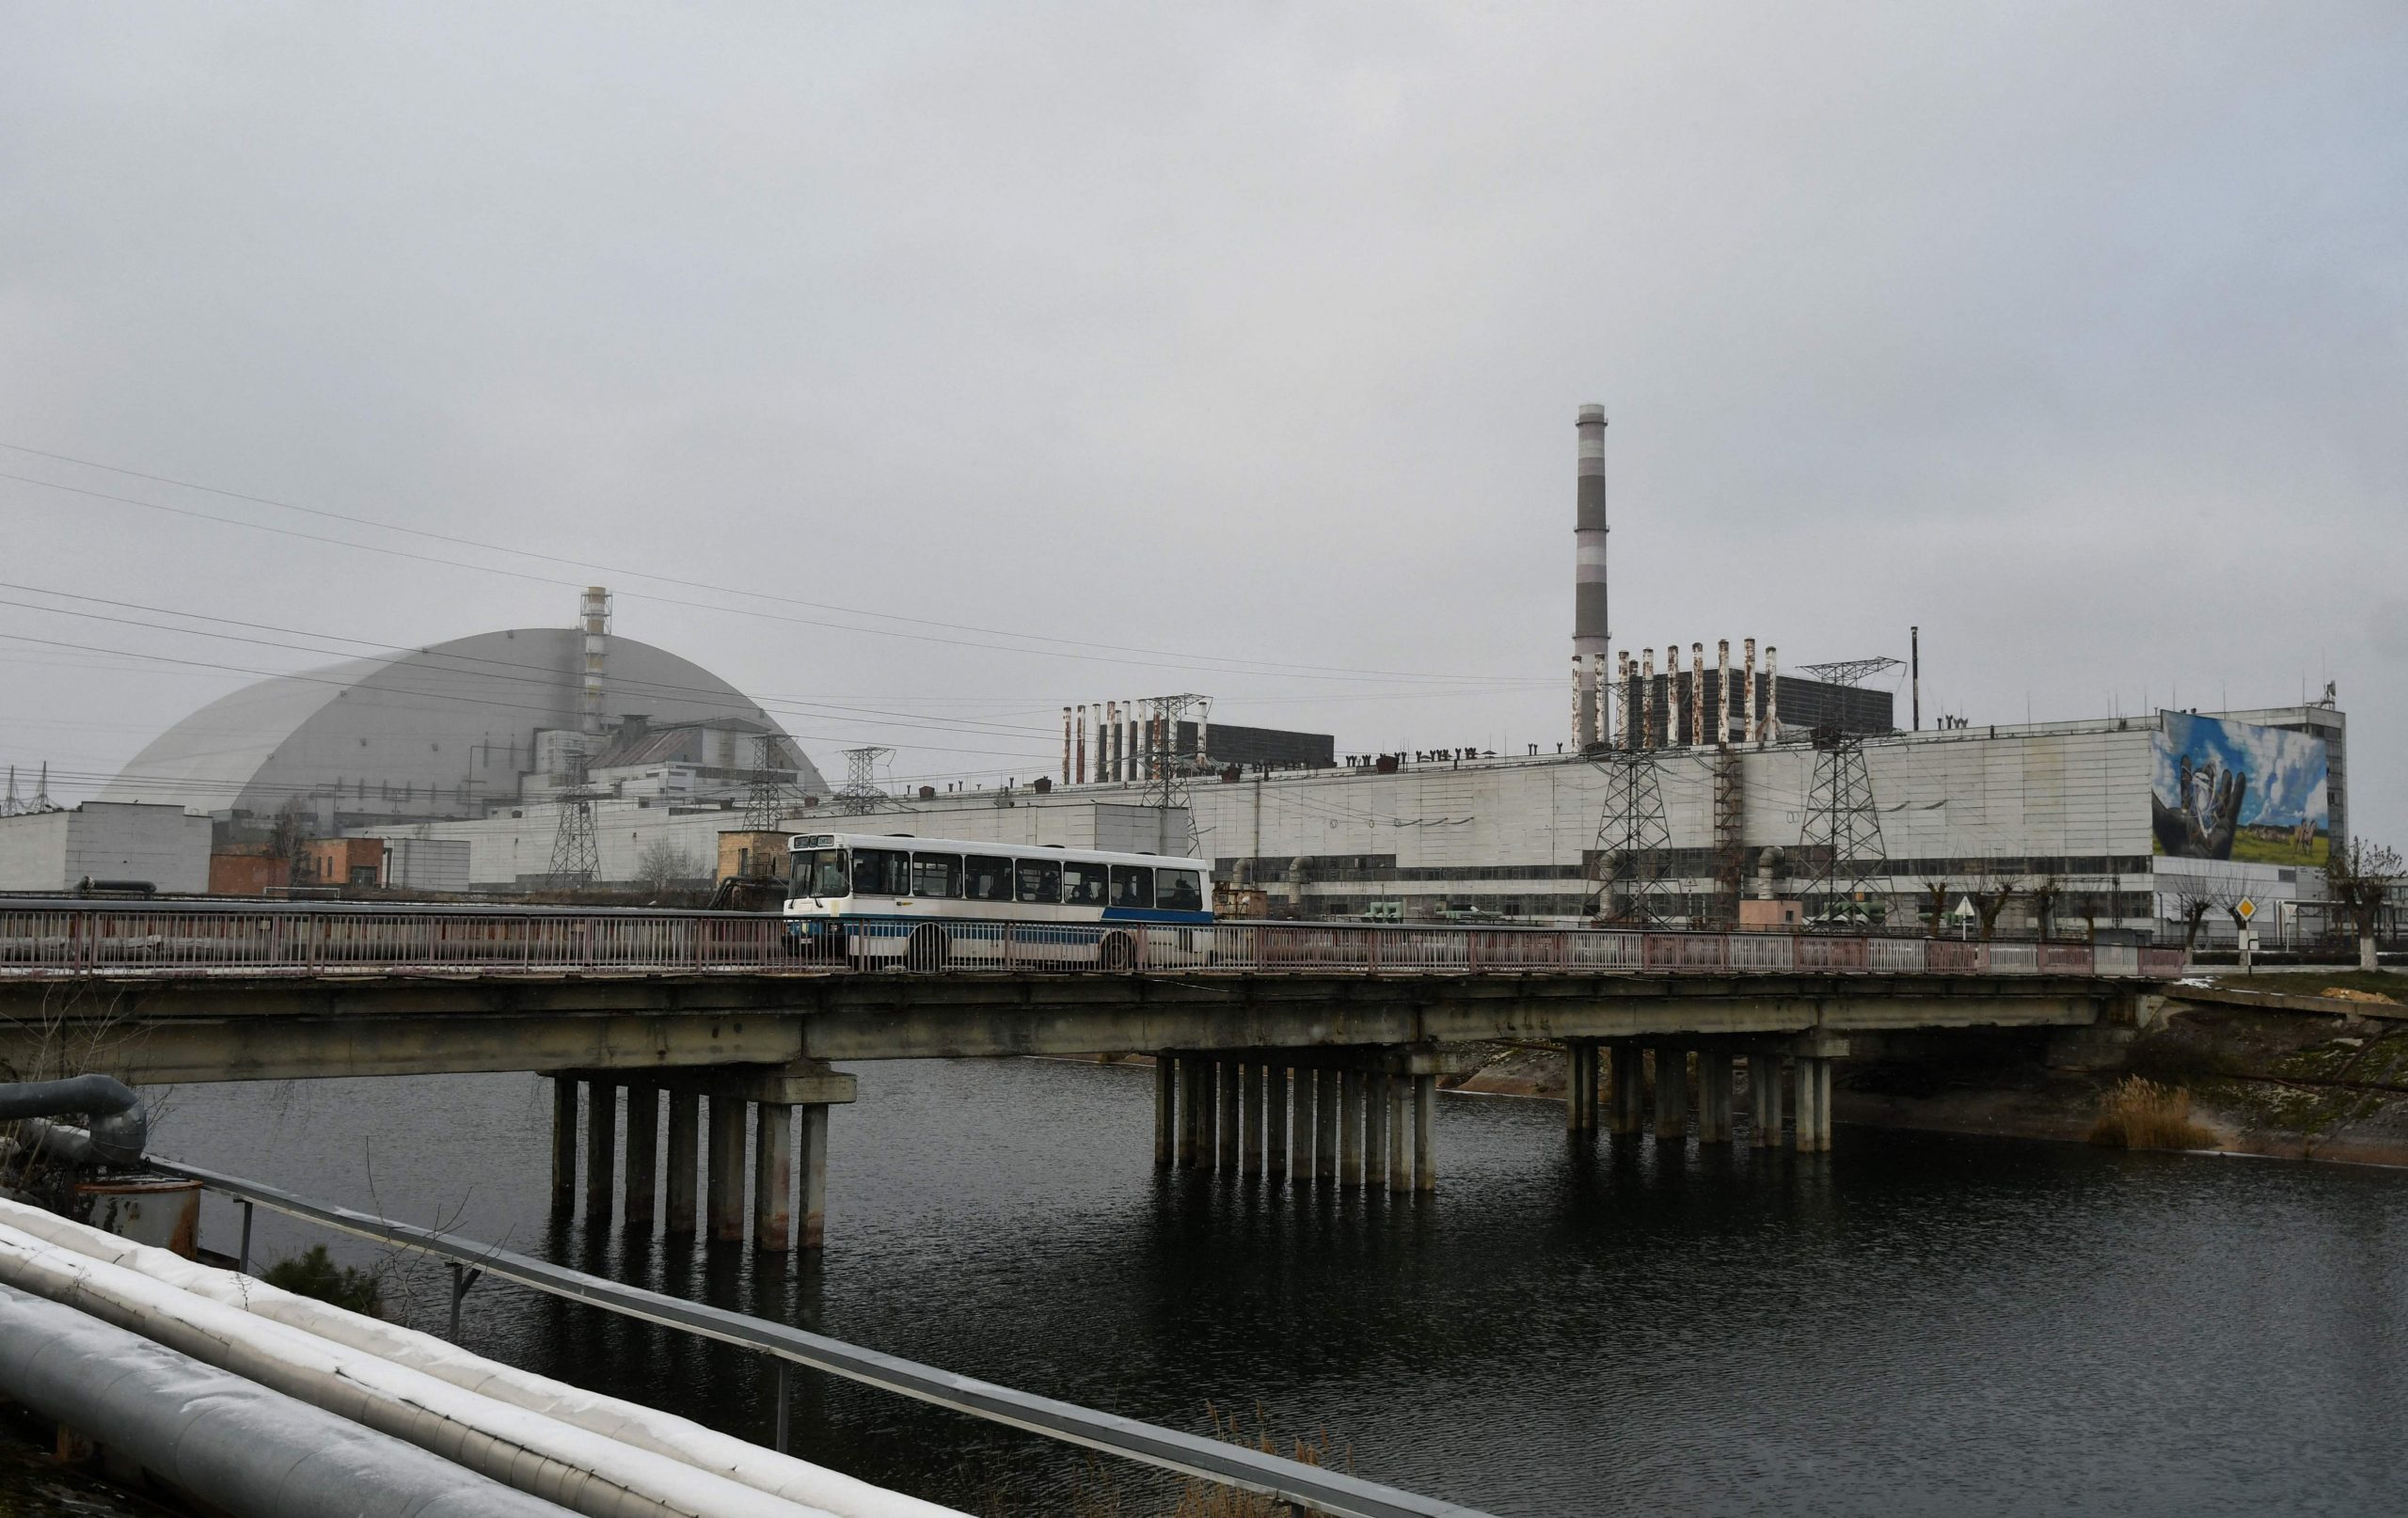  俄军占据切诺拜尔核电站挟持92人　乌方称辐射量上升